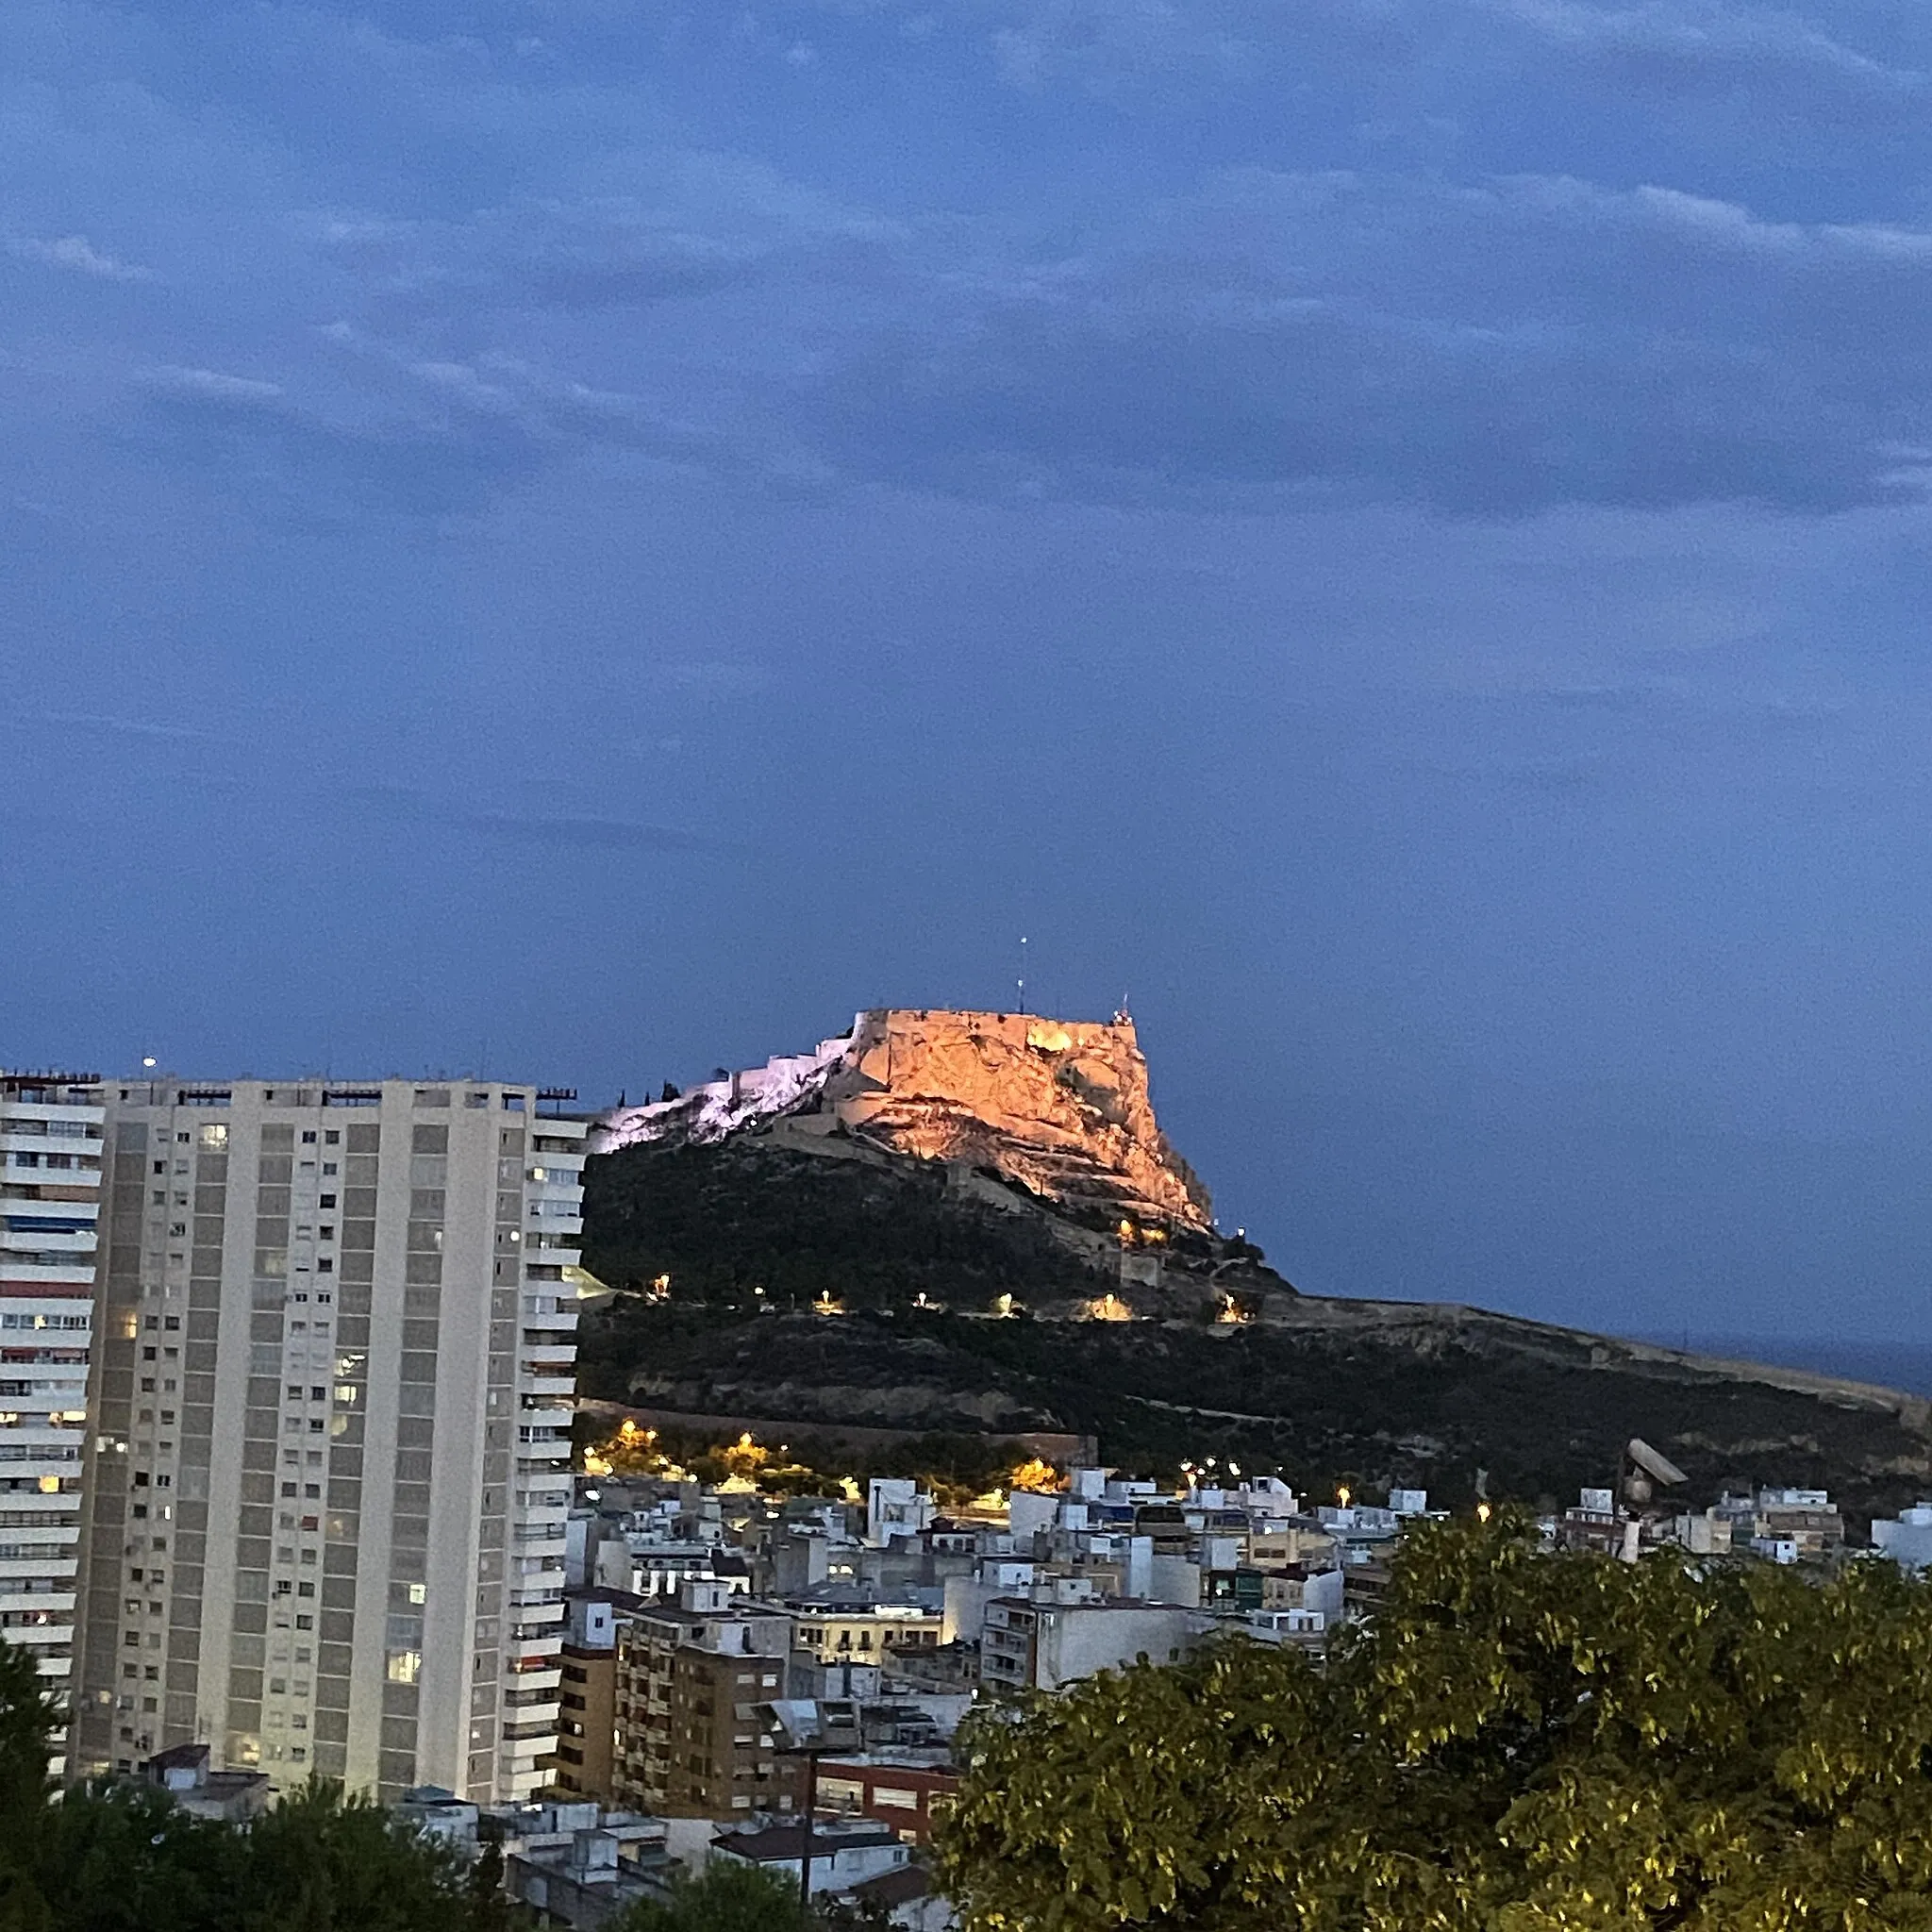 Photo showing: Se trata de una fotografía tomada del Castillo de la Santa Bárbara en Alicante.
Dicho castillo se encuentra iluminado ya que es de noche.